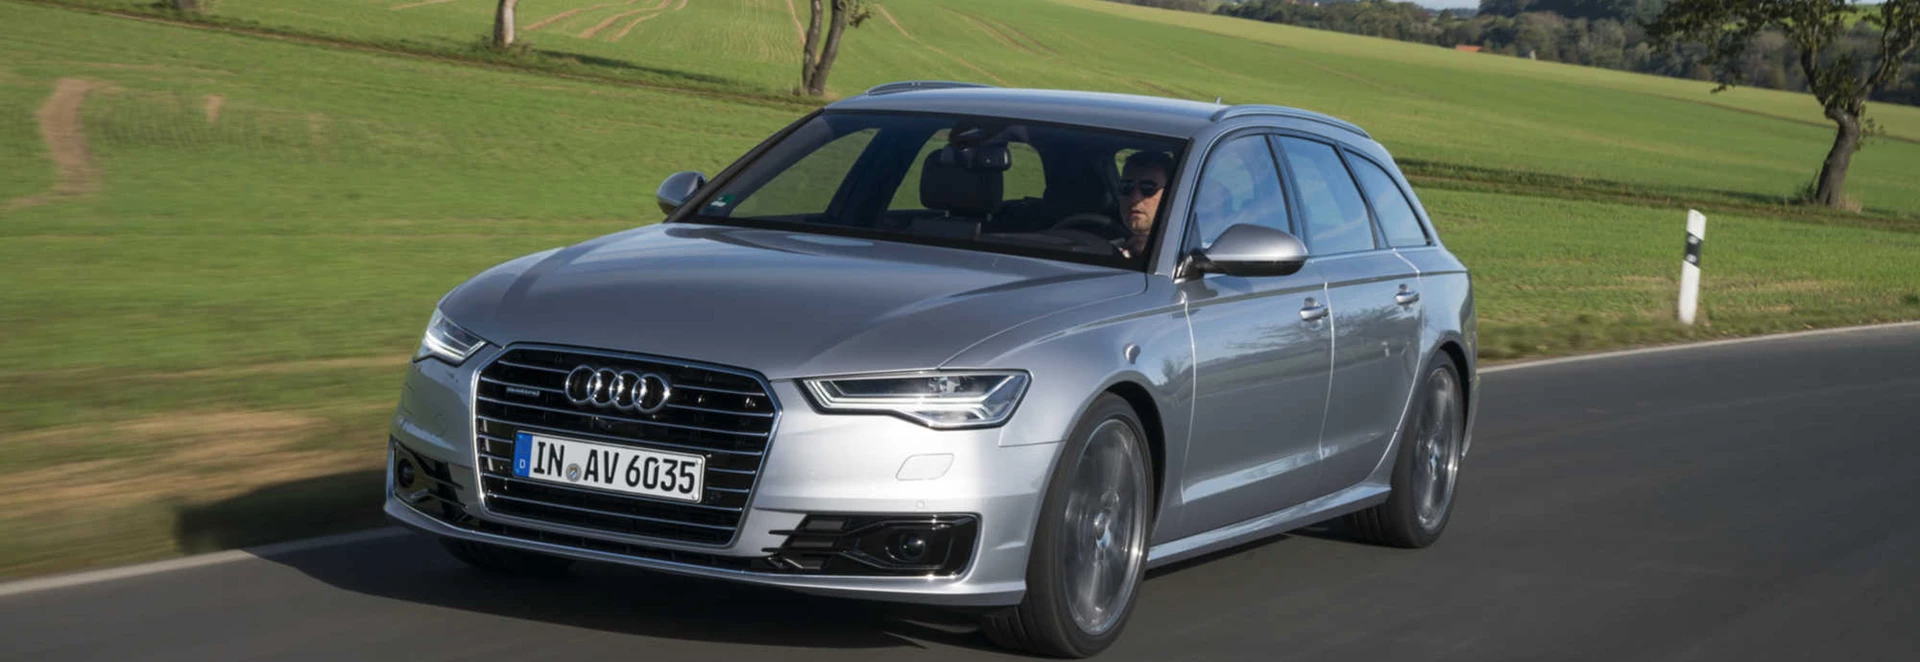 Audi A6 Avant estate review 